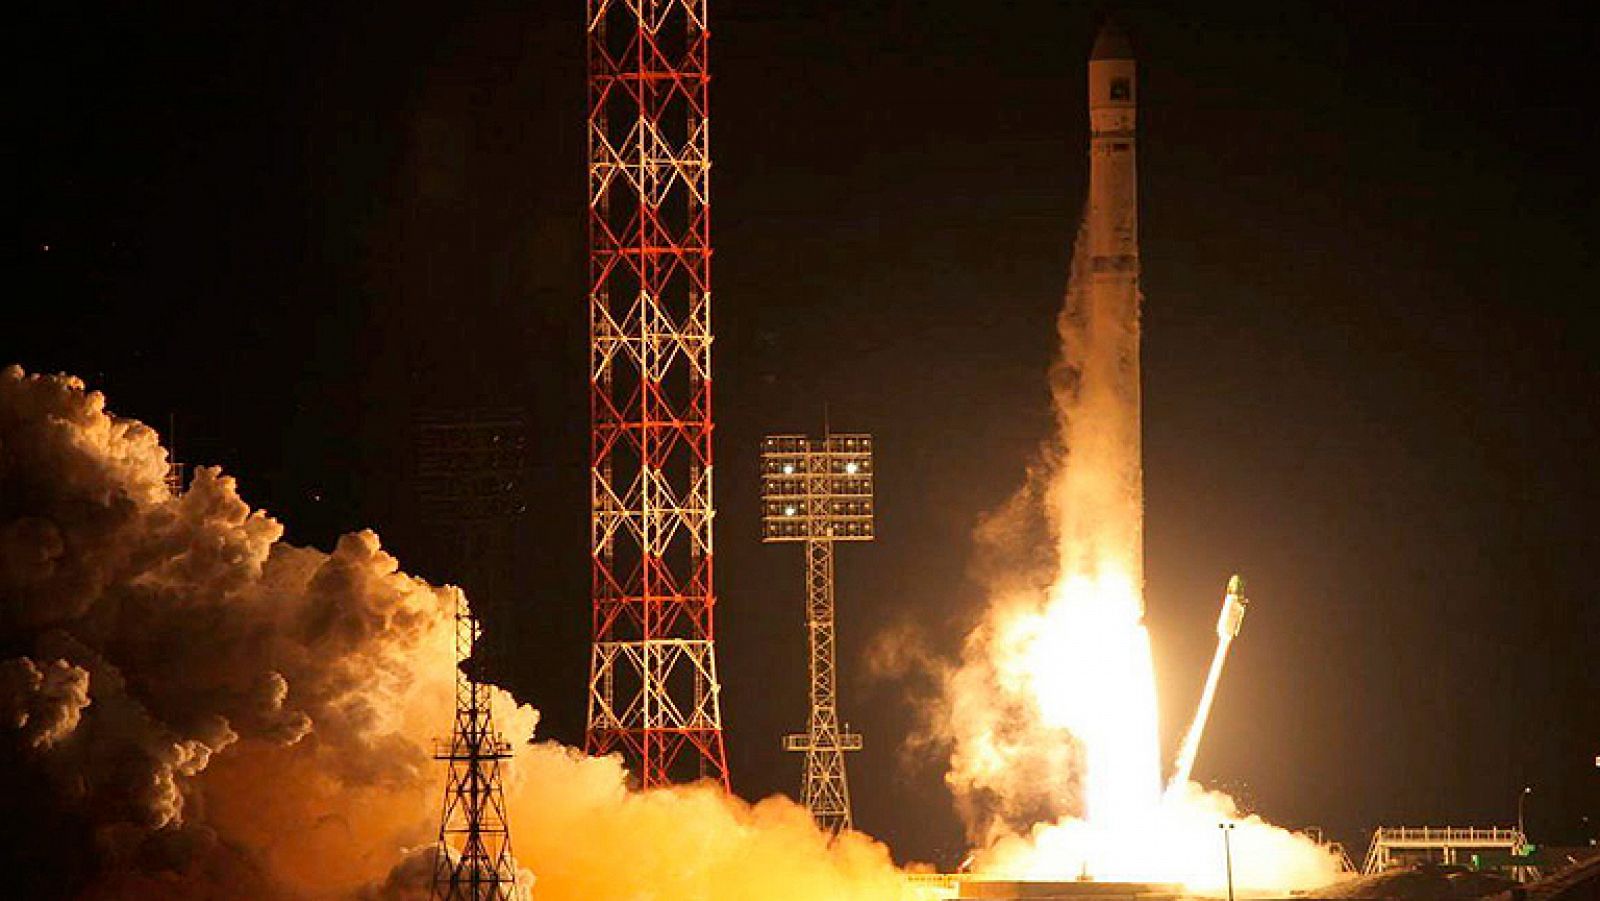 Despegue del cohete ruso Zenit-2, que transporta la estación interplanetaria rusa Fobos-Grunt